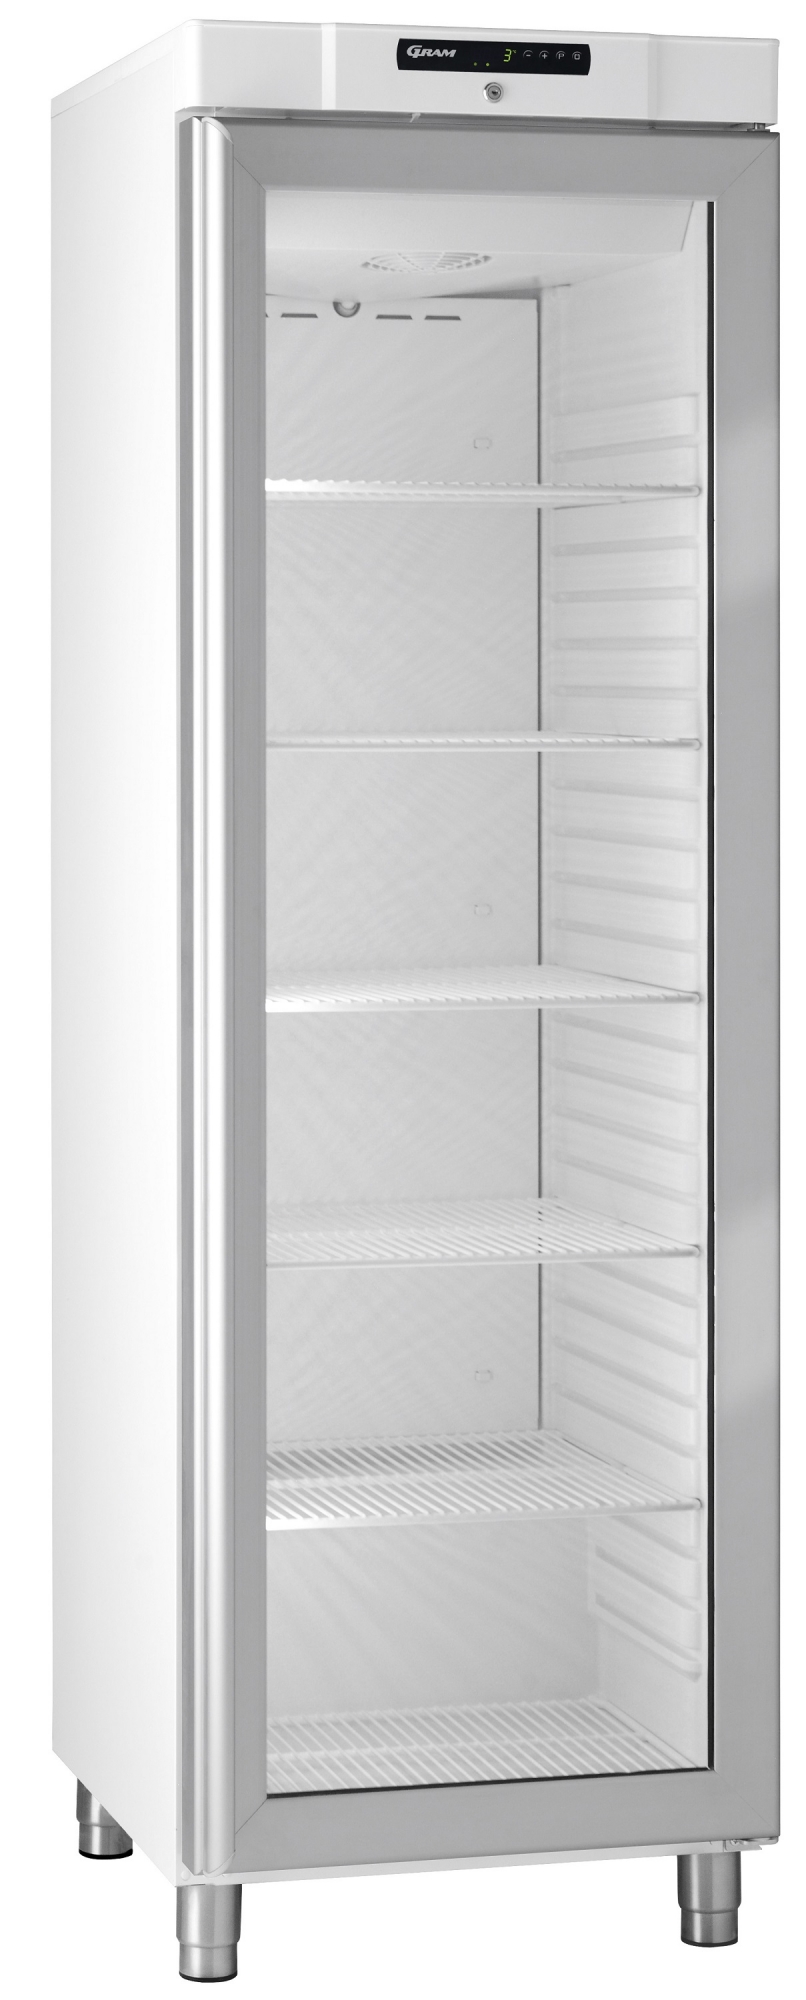 Gram Compact KG 420 LG professionele koelkast met glasdeur